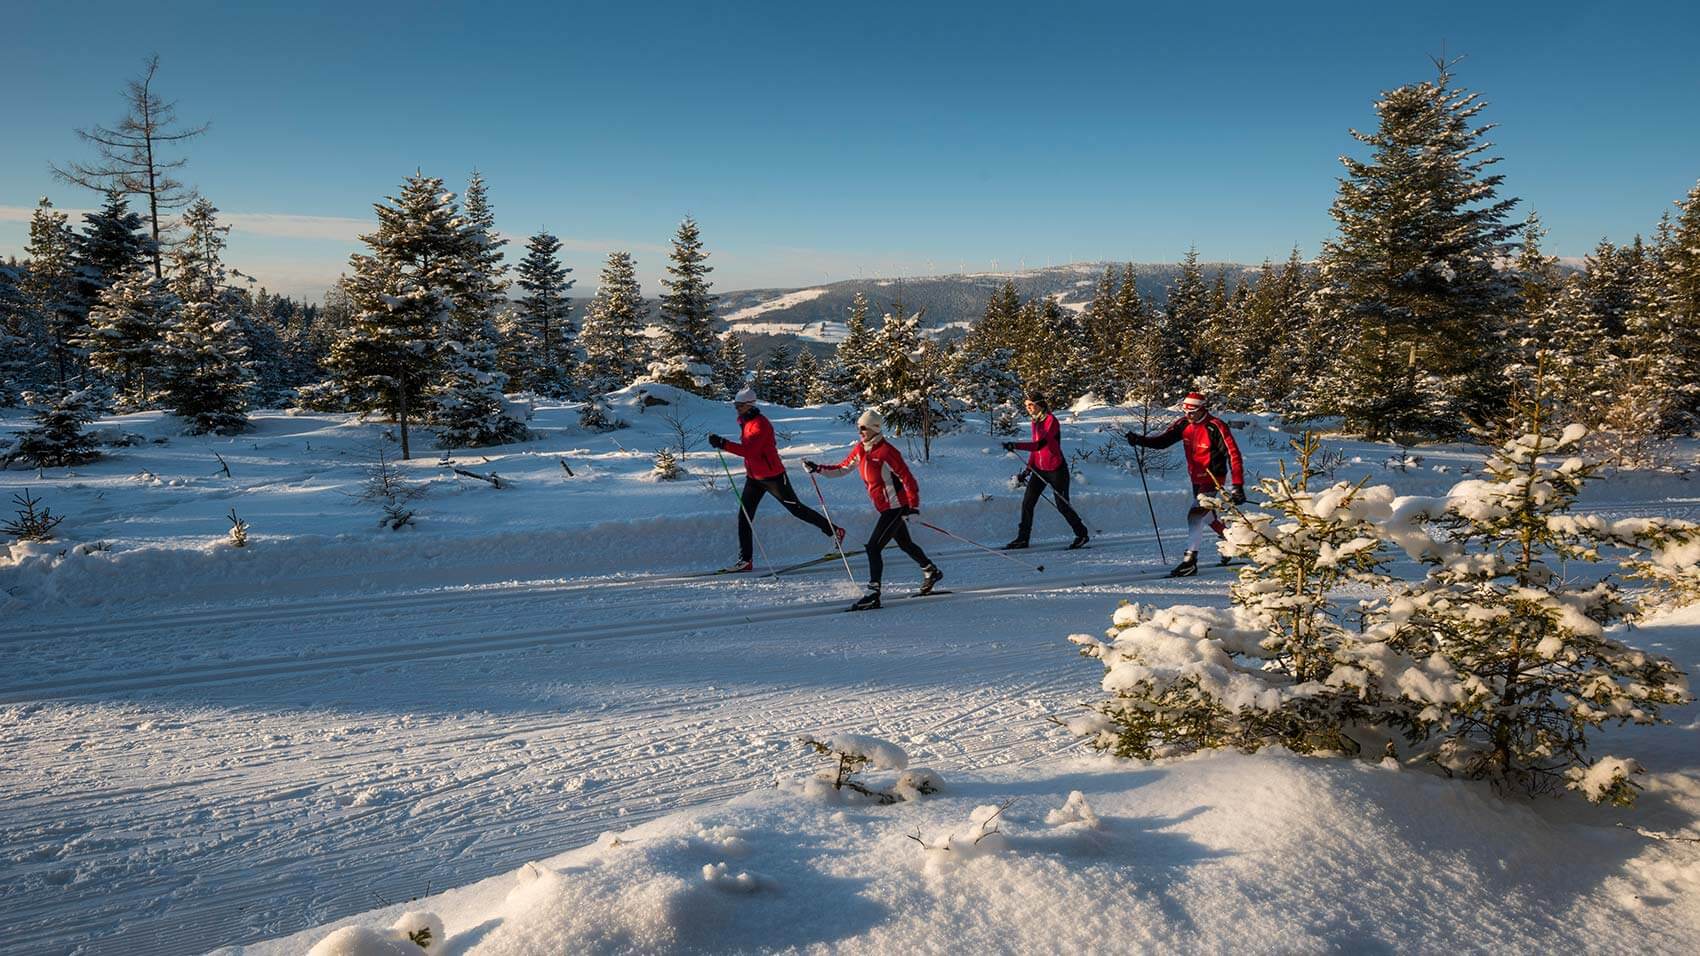 Vier Längläufer sind unterwegs auf der Loipe, weiters Blick auf die verschneiten Bäume und herrliches Panorama im Hintergrund